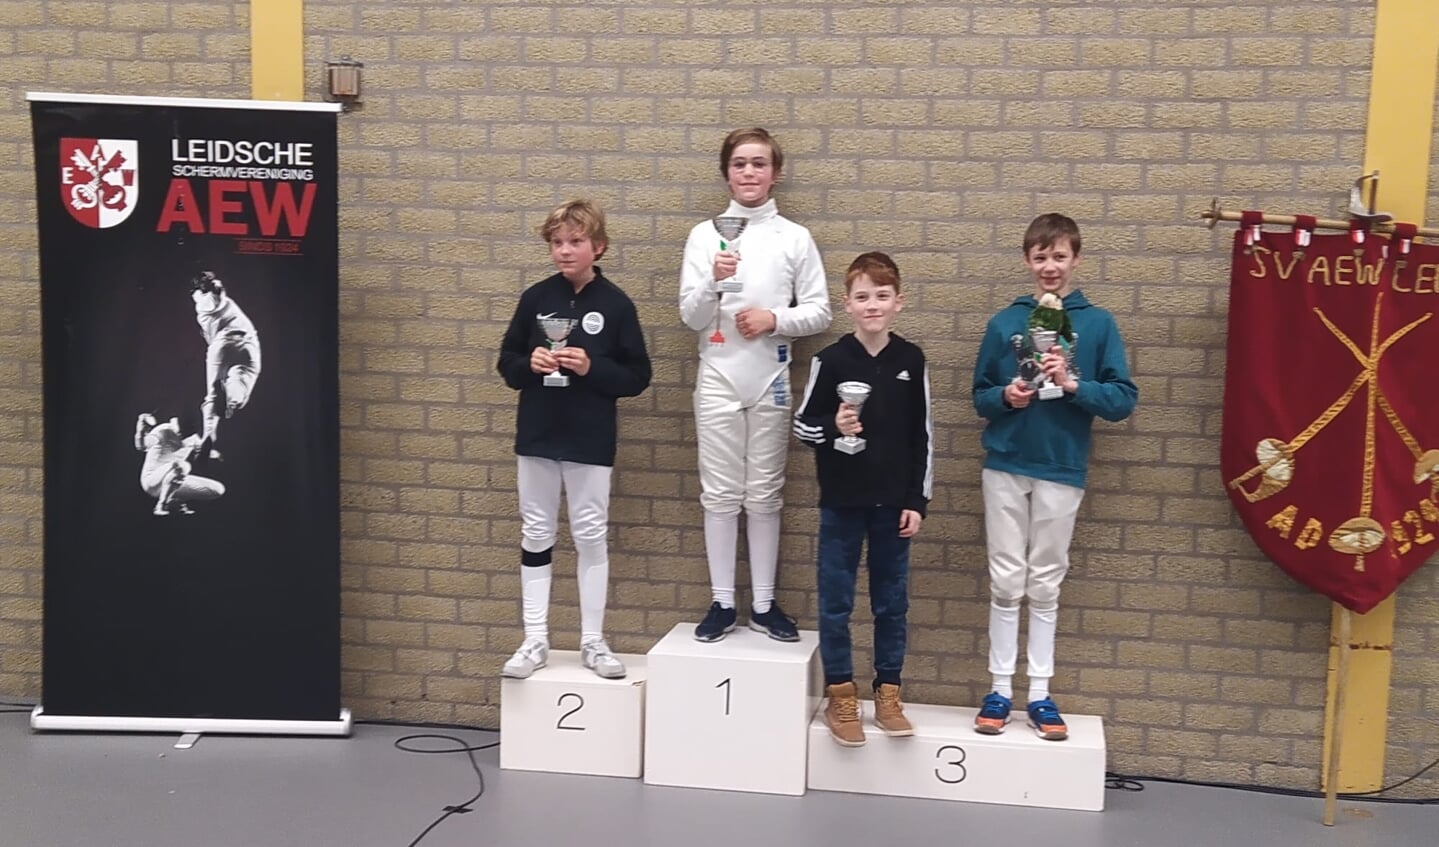 Remco Willemen wint het 15de Internationale Rijnlandtoernooi